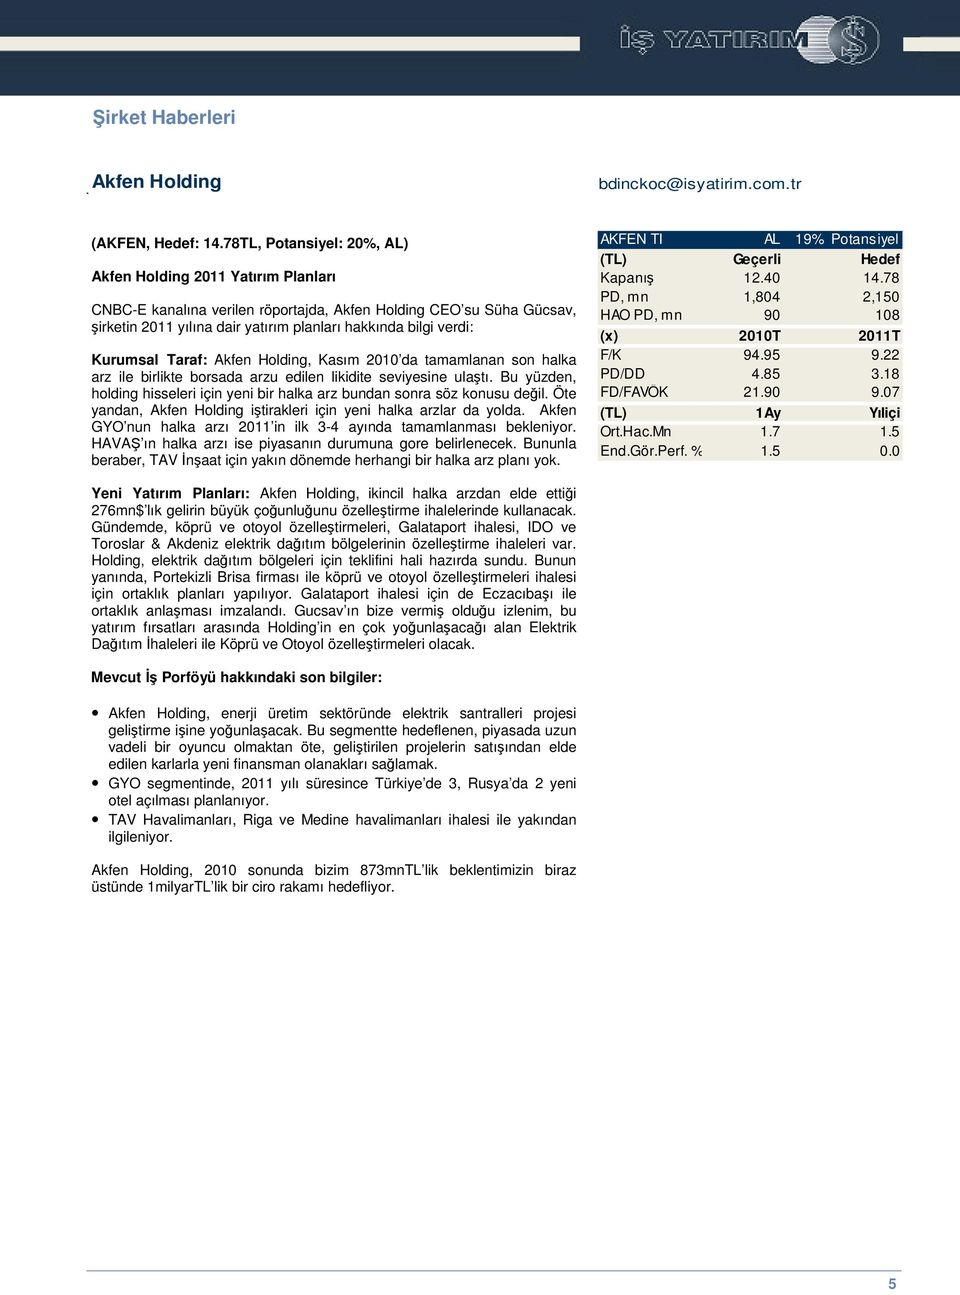 Kurumsal Taraf: Akfen Holding, Kasım 2010 da tamamlanan son halka arz ile birlikte borsada arzu edilen likidite seviyesine ulatı.